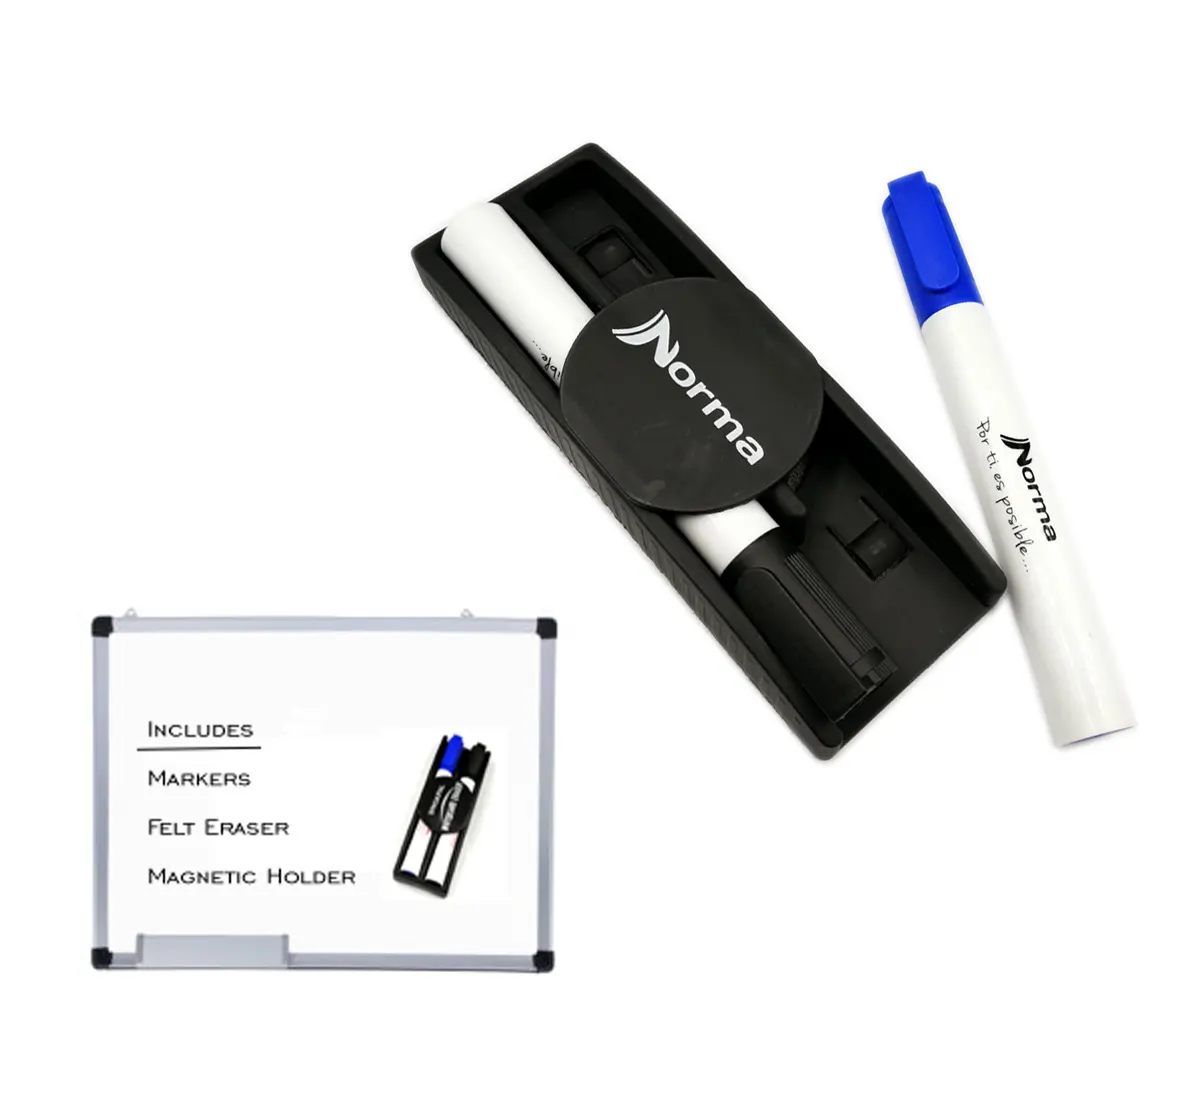 Dry Erasable Marker Pen Set with magnetic pen holder and felt eraser